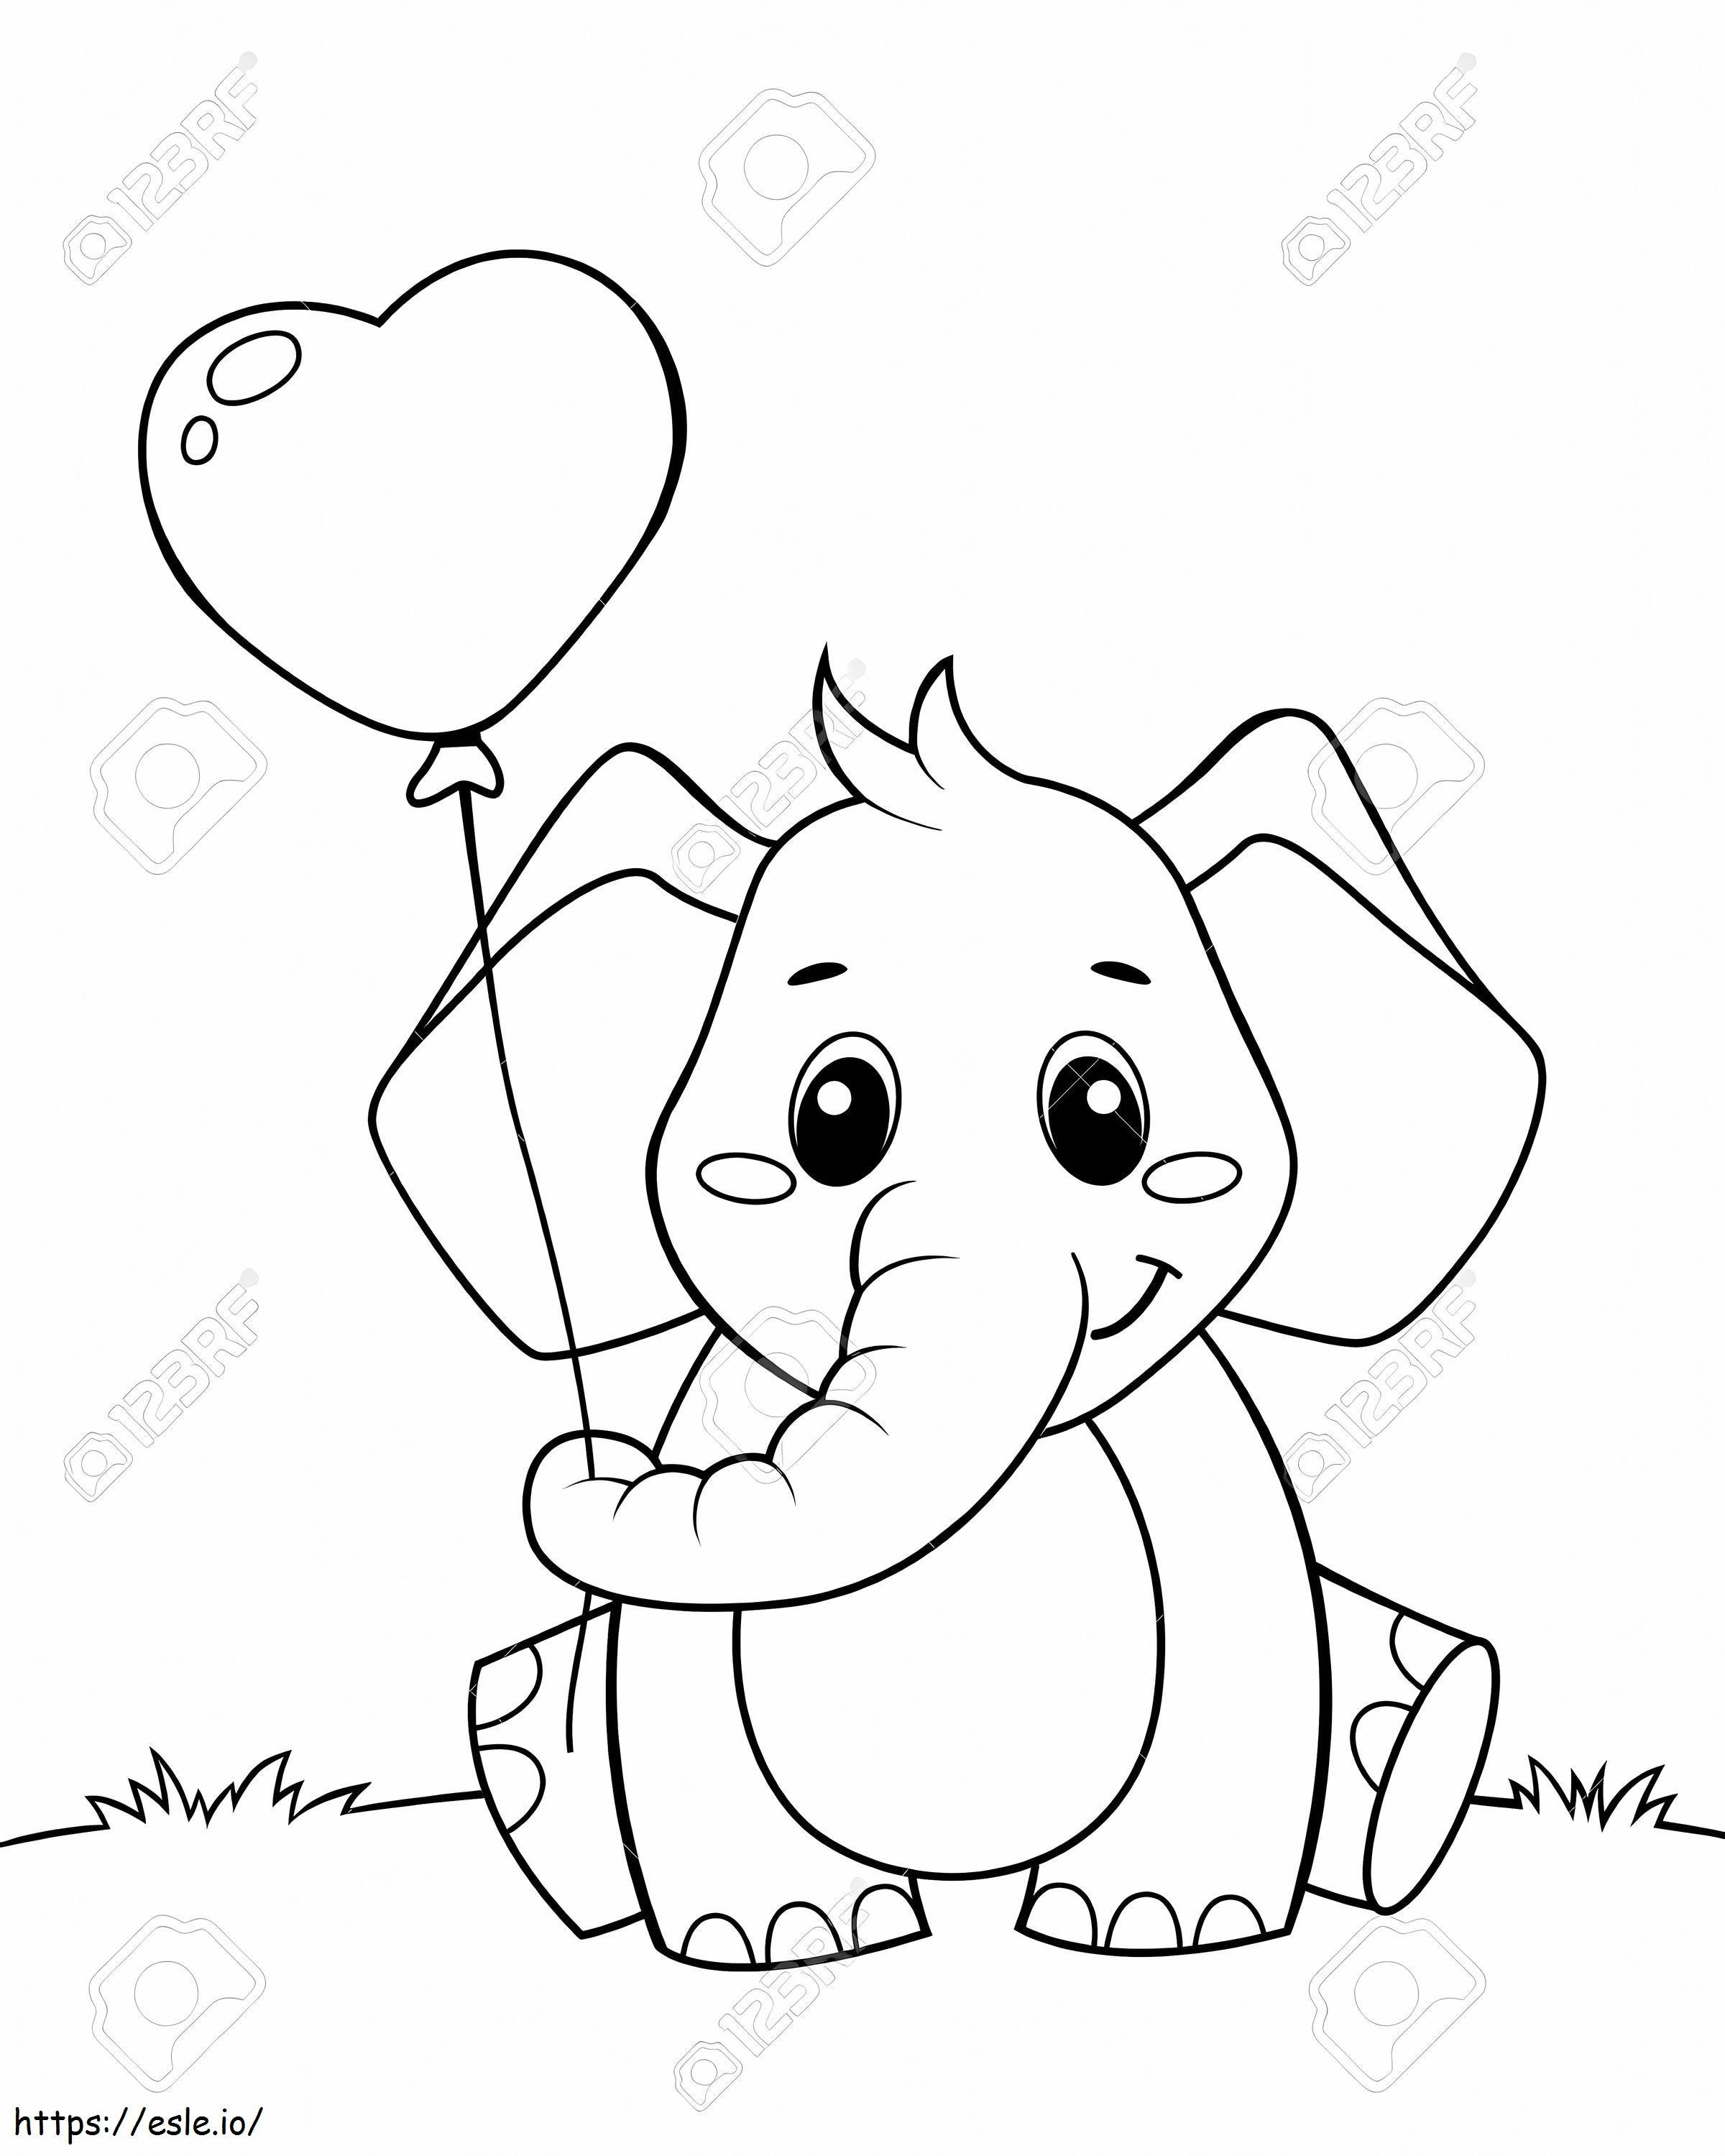  Niedlicher kleiner Elefant, der einen Ballon in Herzform hält, schwarz-weiße Vektorillustration zum Ausmalen ausmalbilder